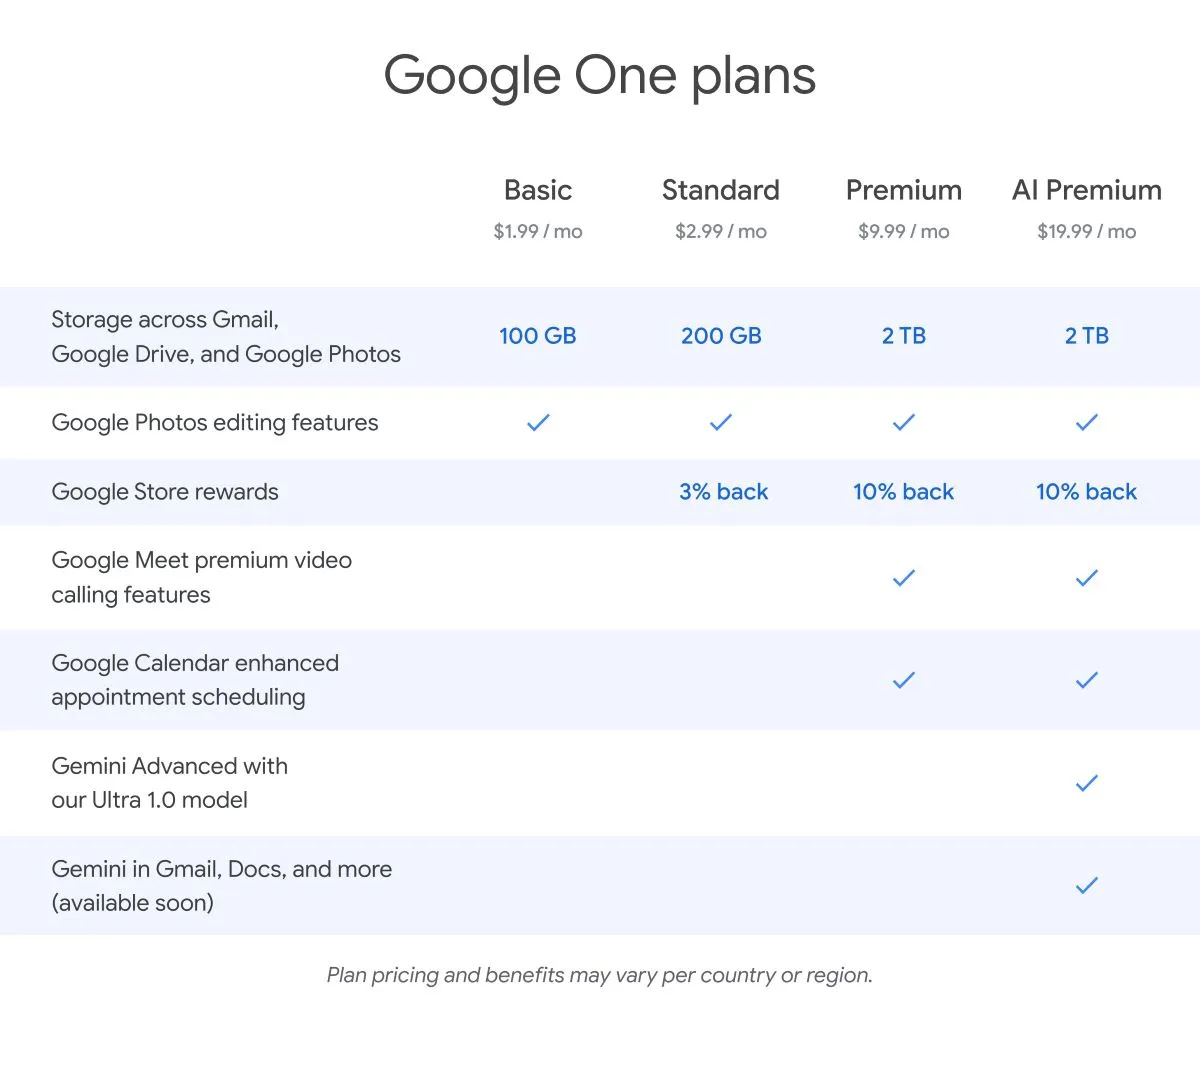 Uma imagem que mostra um gráfico comparativo dos planos do Google One, detalhando vários níveis de assinatura com diferentes preços e recursos incluídos.